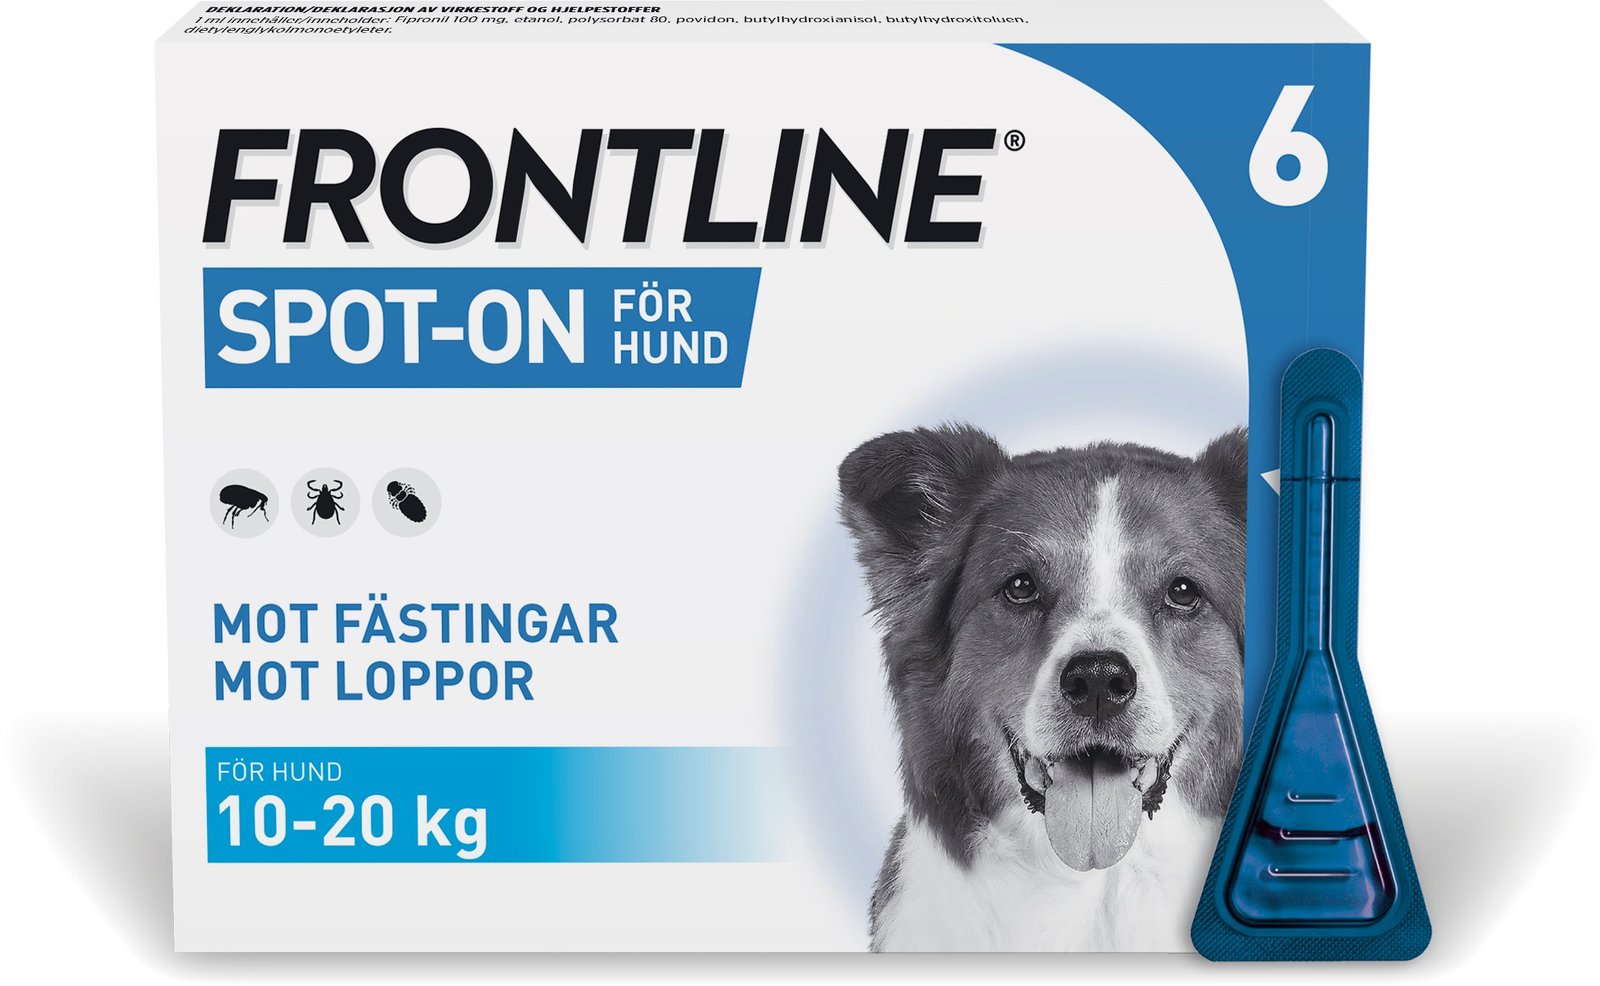 Frontline Vet 100mg/ml Spot-On 6 x 1,34 ml